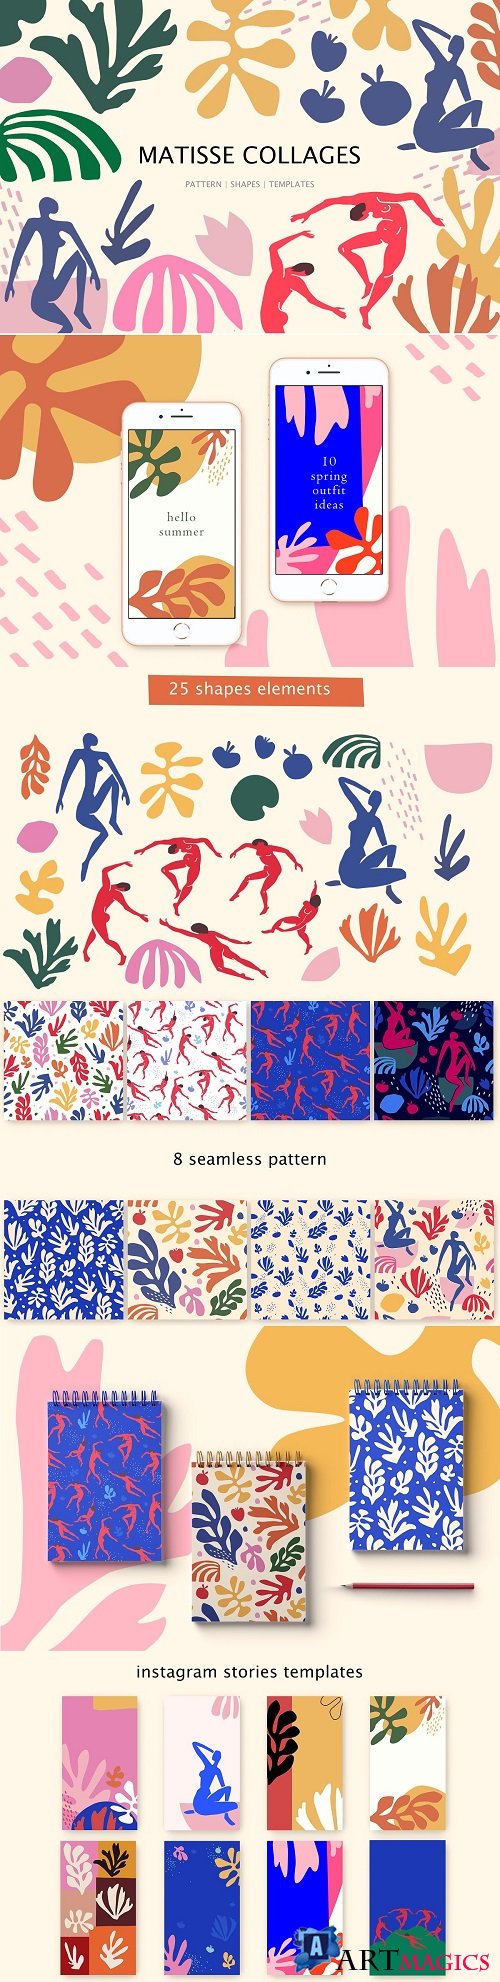 Matisse collages art - 3917458